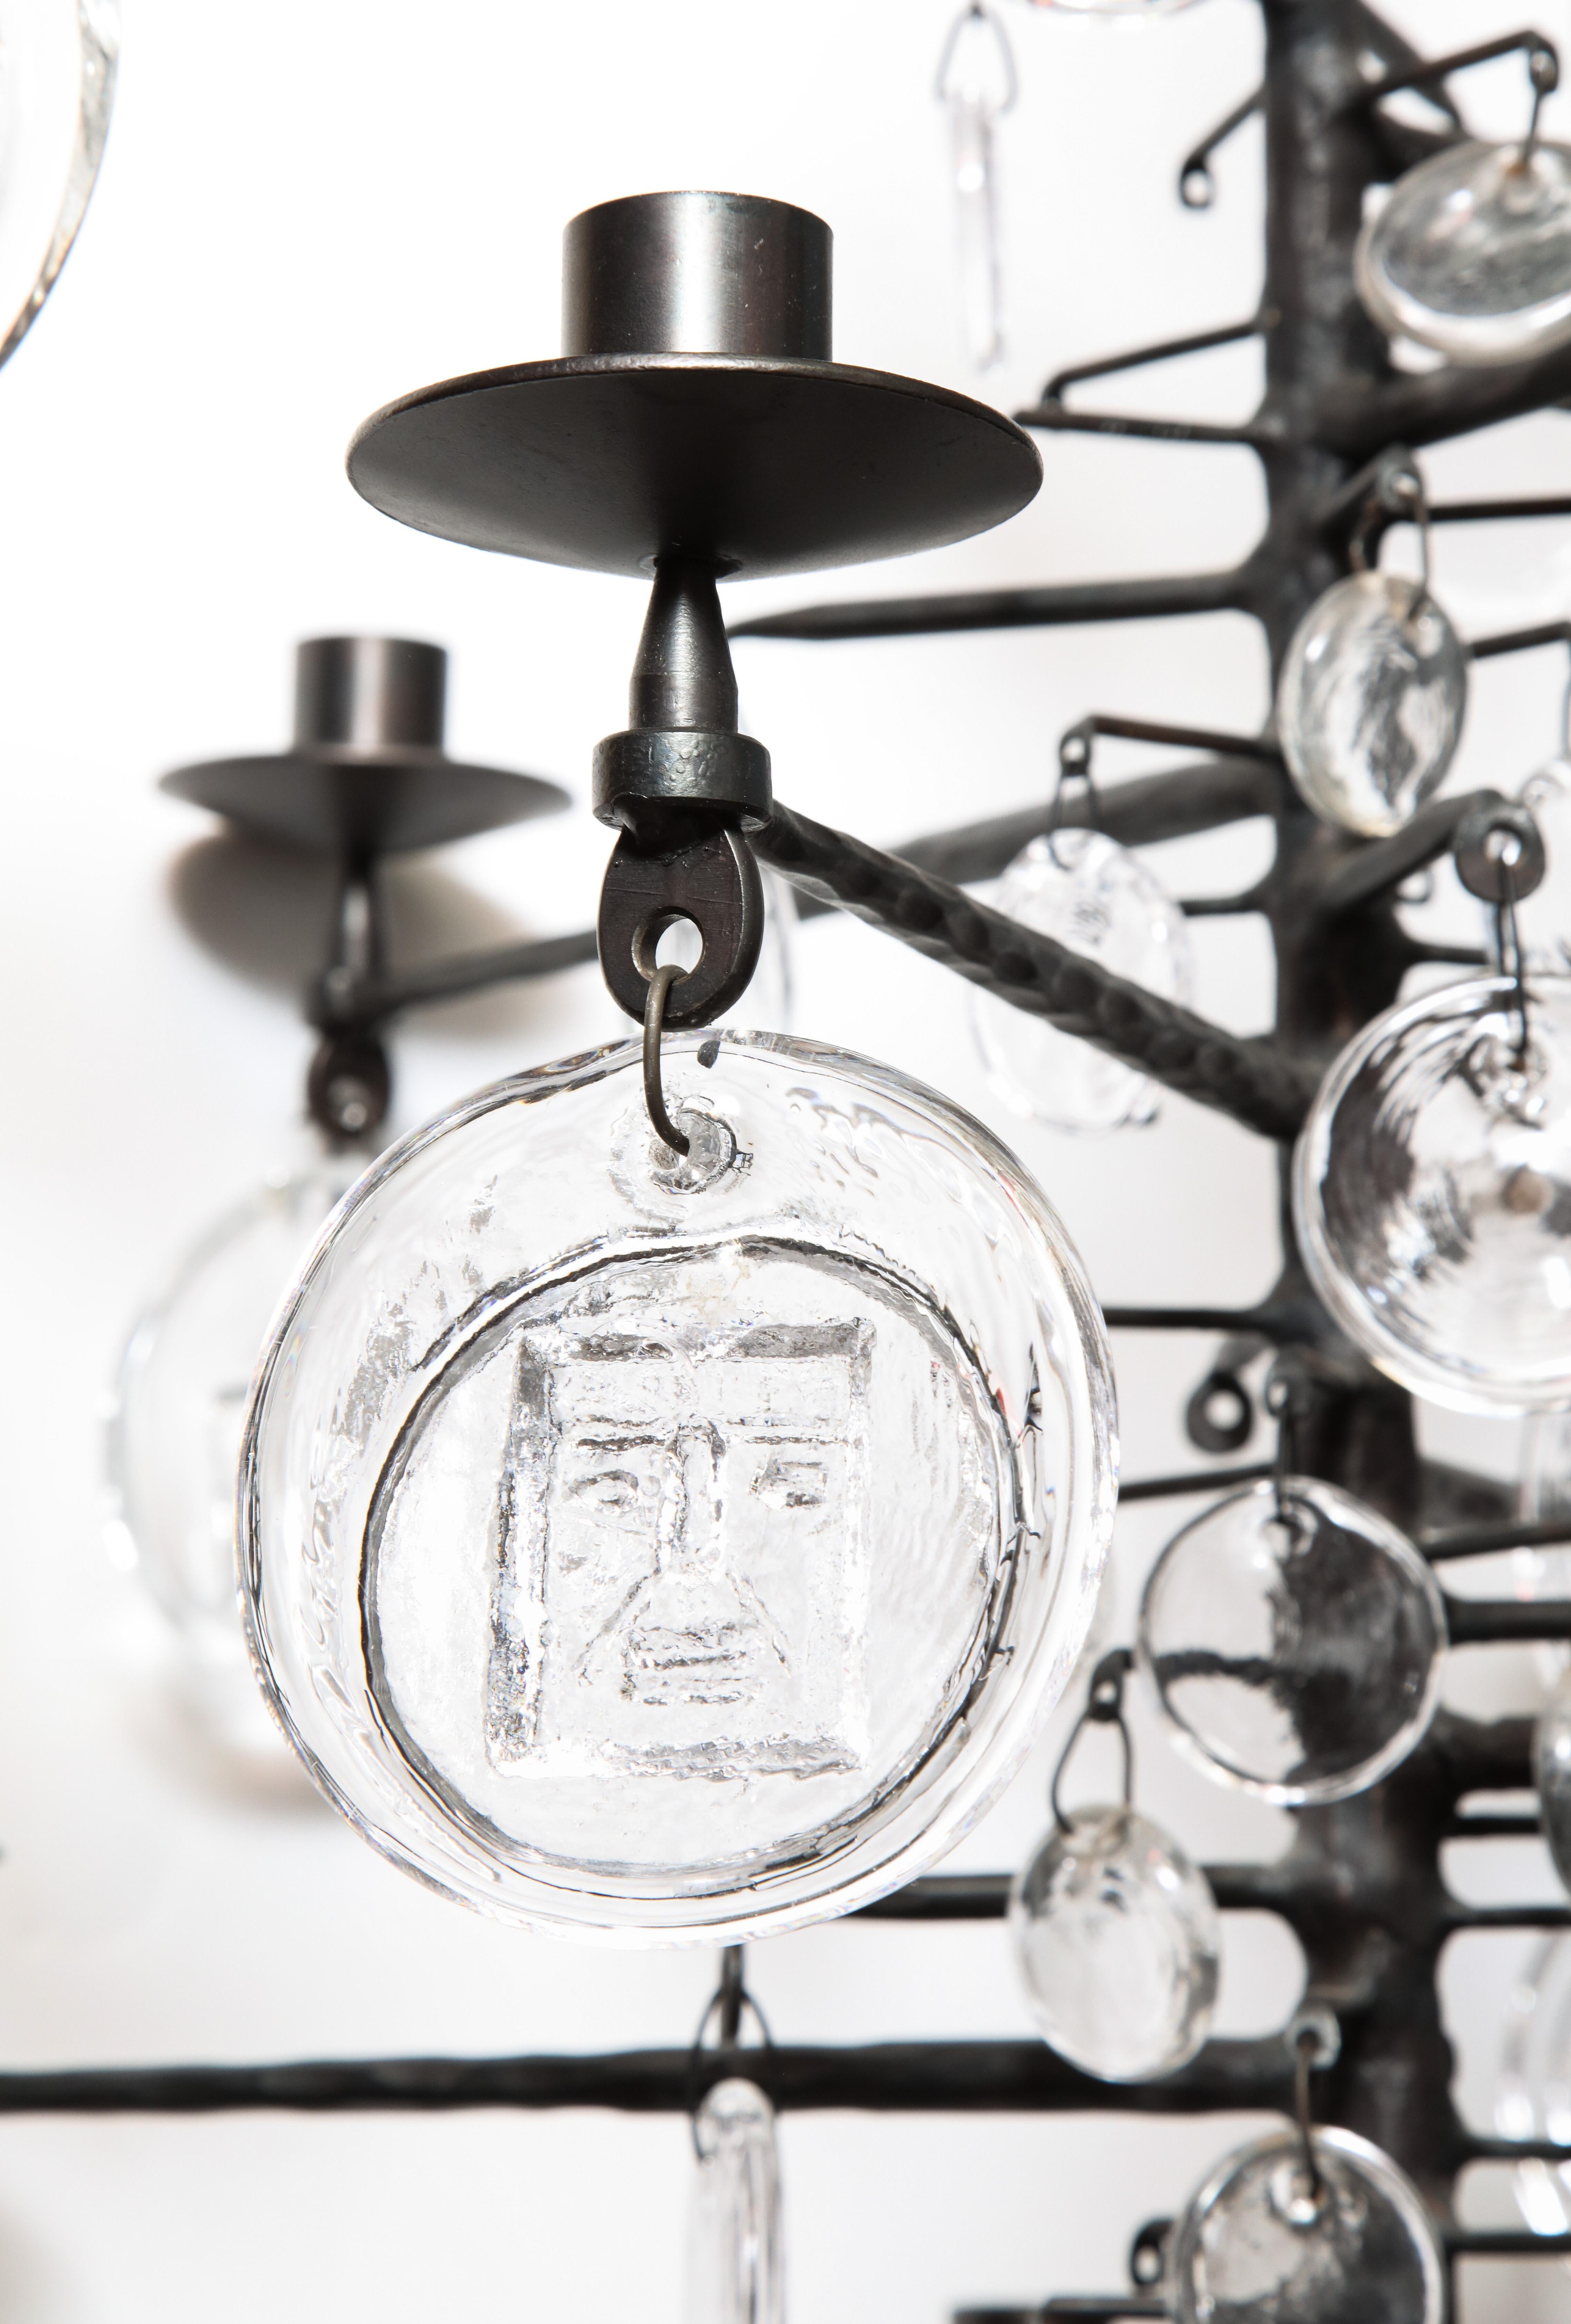 Un lustre candélabre vintage à douze branches conçu par Erik Hoglund.  Modèle 341.  Pendentifs en verre fabriqués par Boda Nova Glassworks ; cadre en fer forgé fabriqué par Axel Stromberg Ironworks.  Suède, vers 1957.

Pas de câblage pour l'instant.